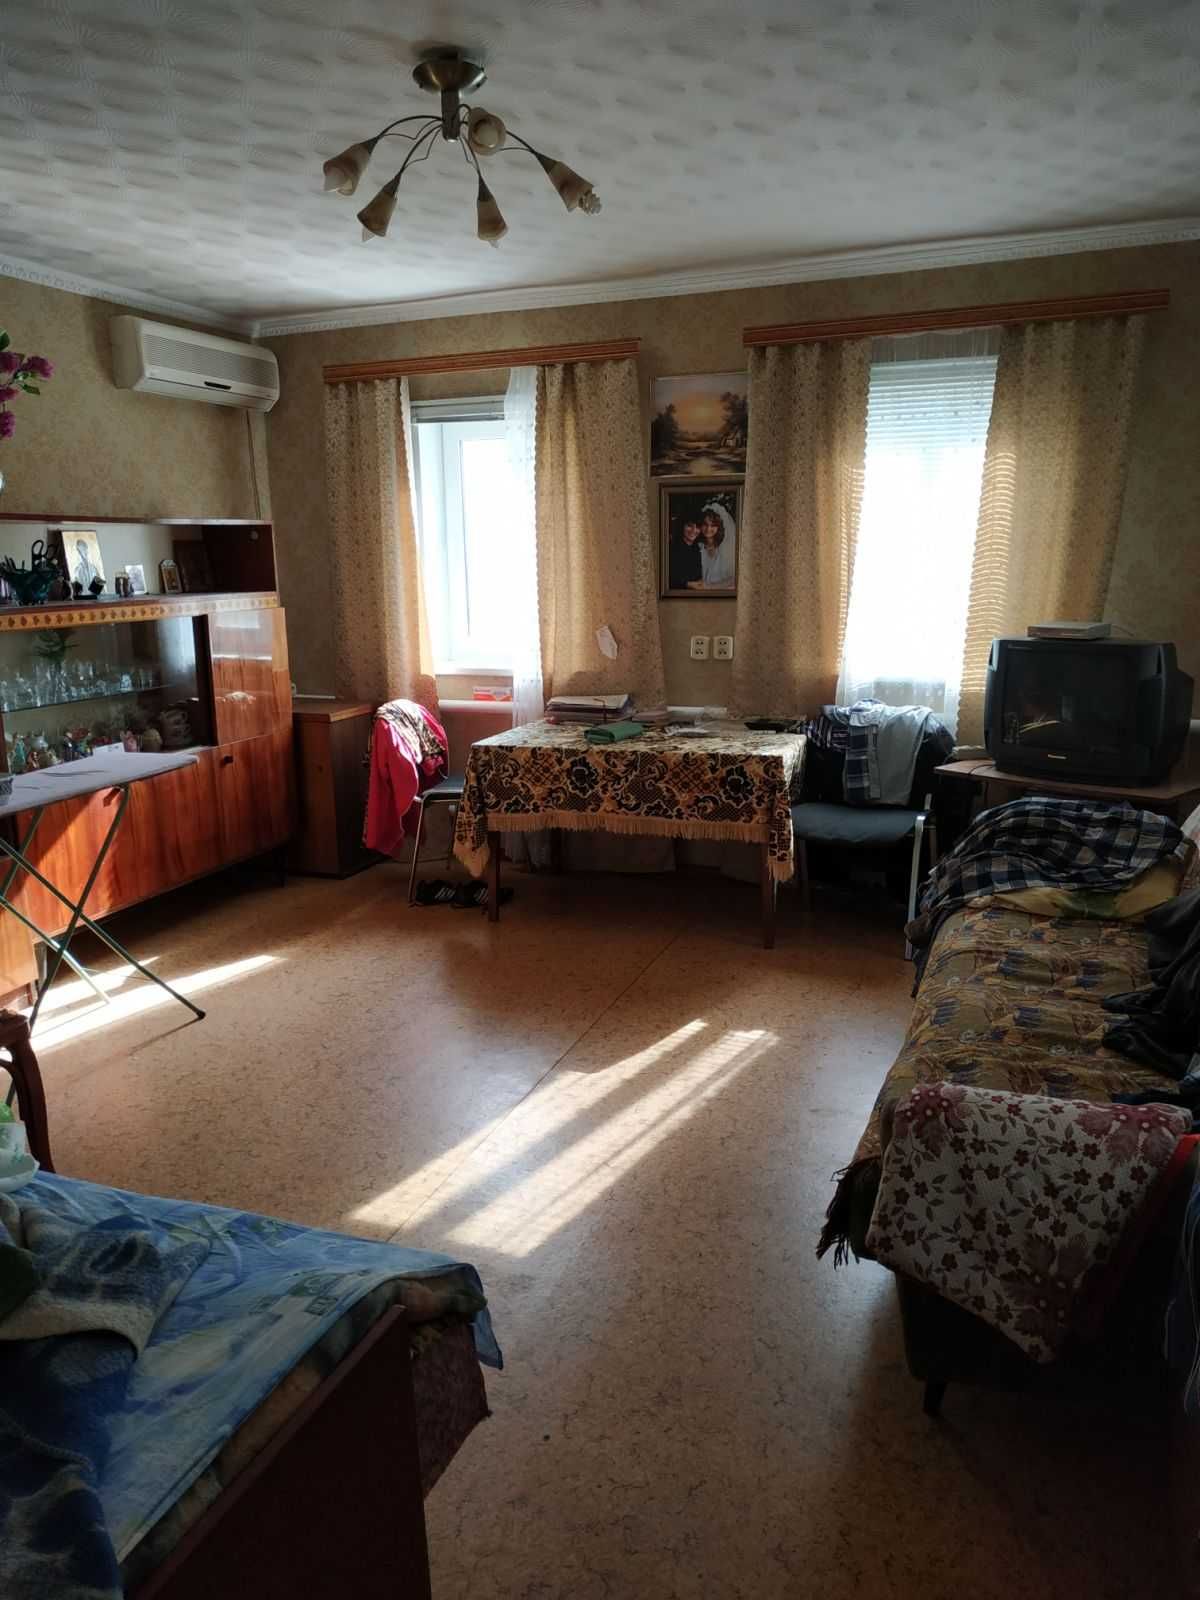 Продам дом в Харьковской области